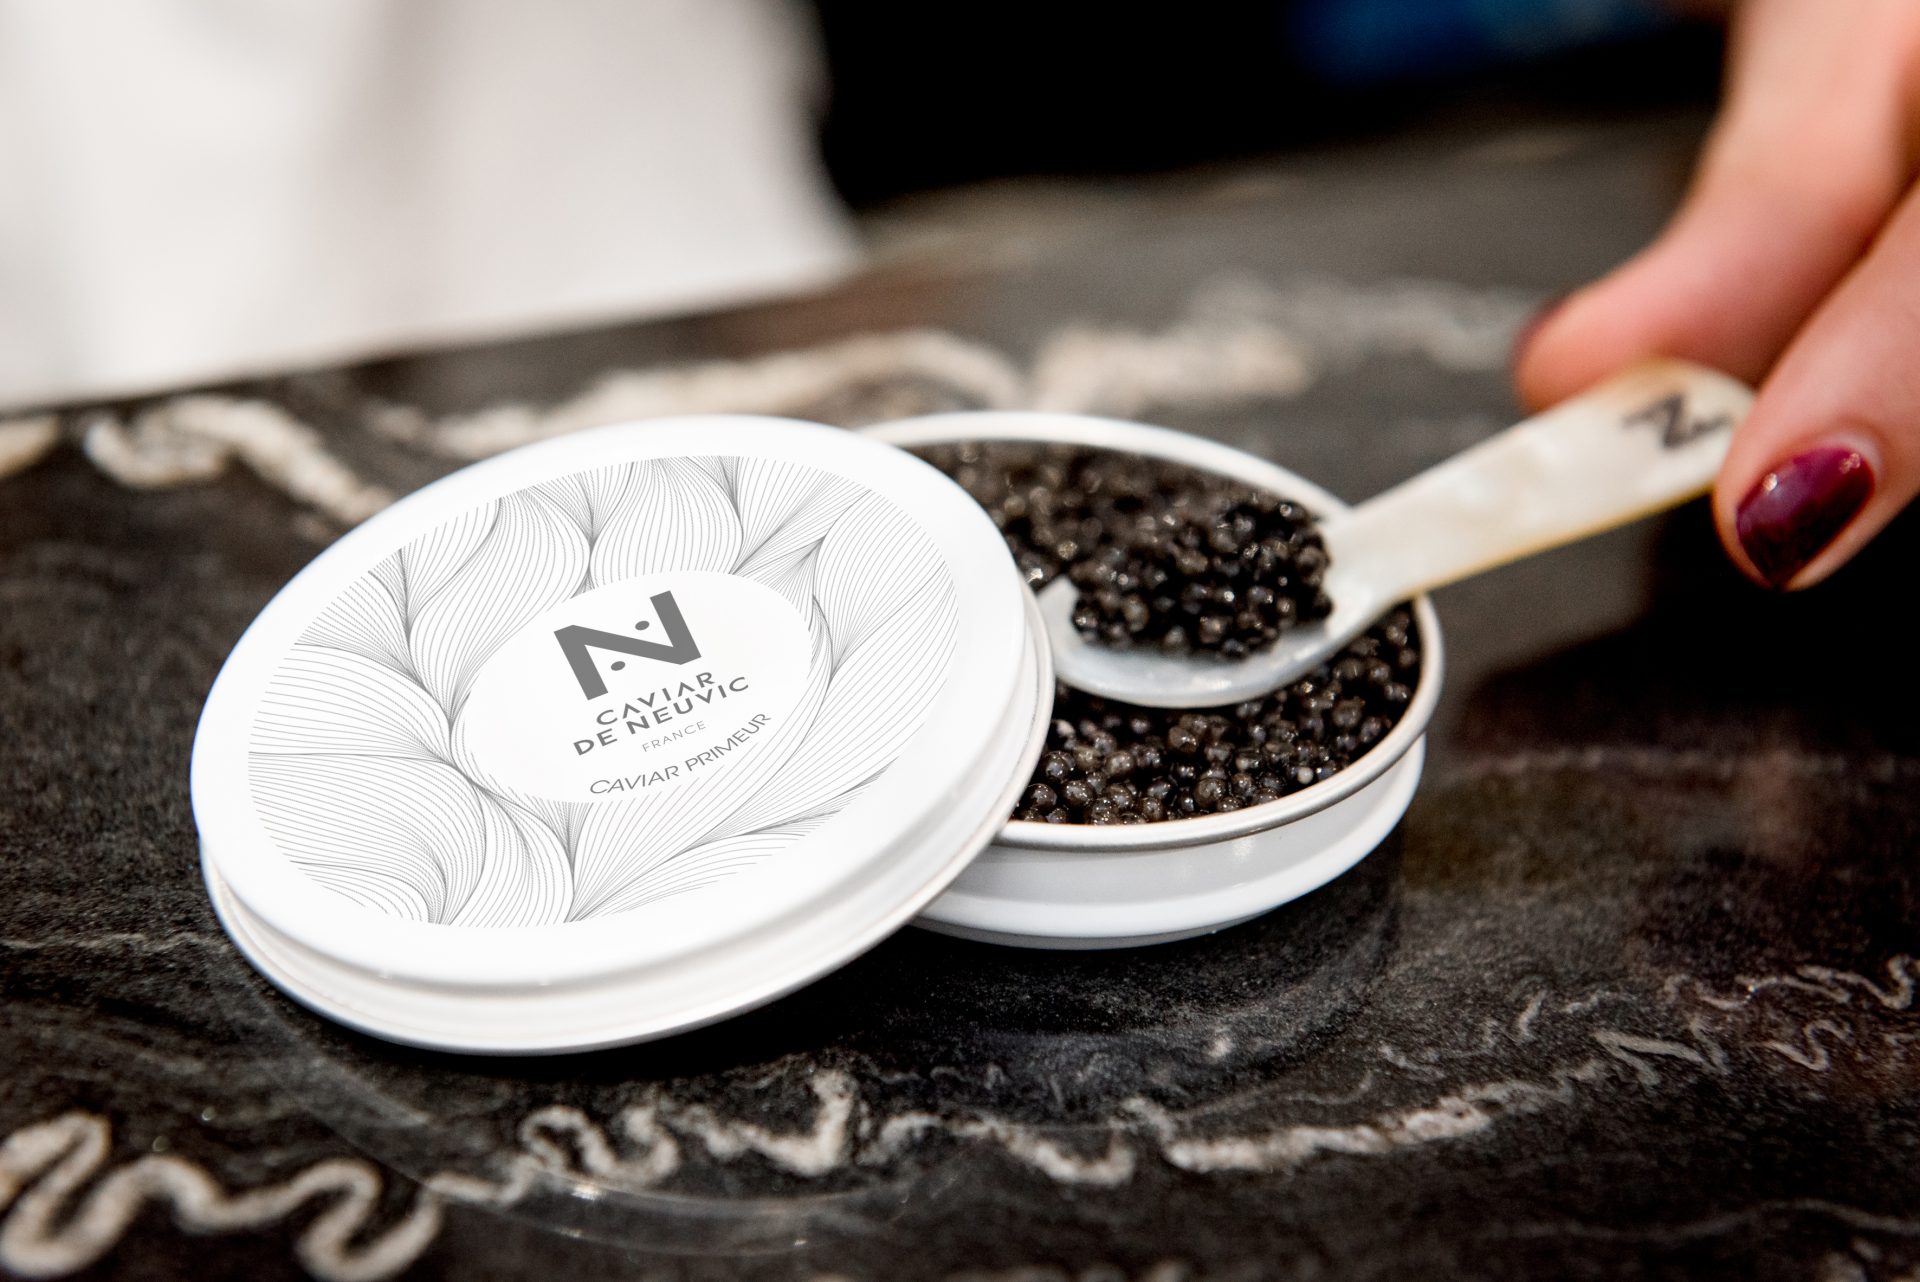 L'odeur du caviar : le caviar a t-il une odeur ?